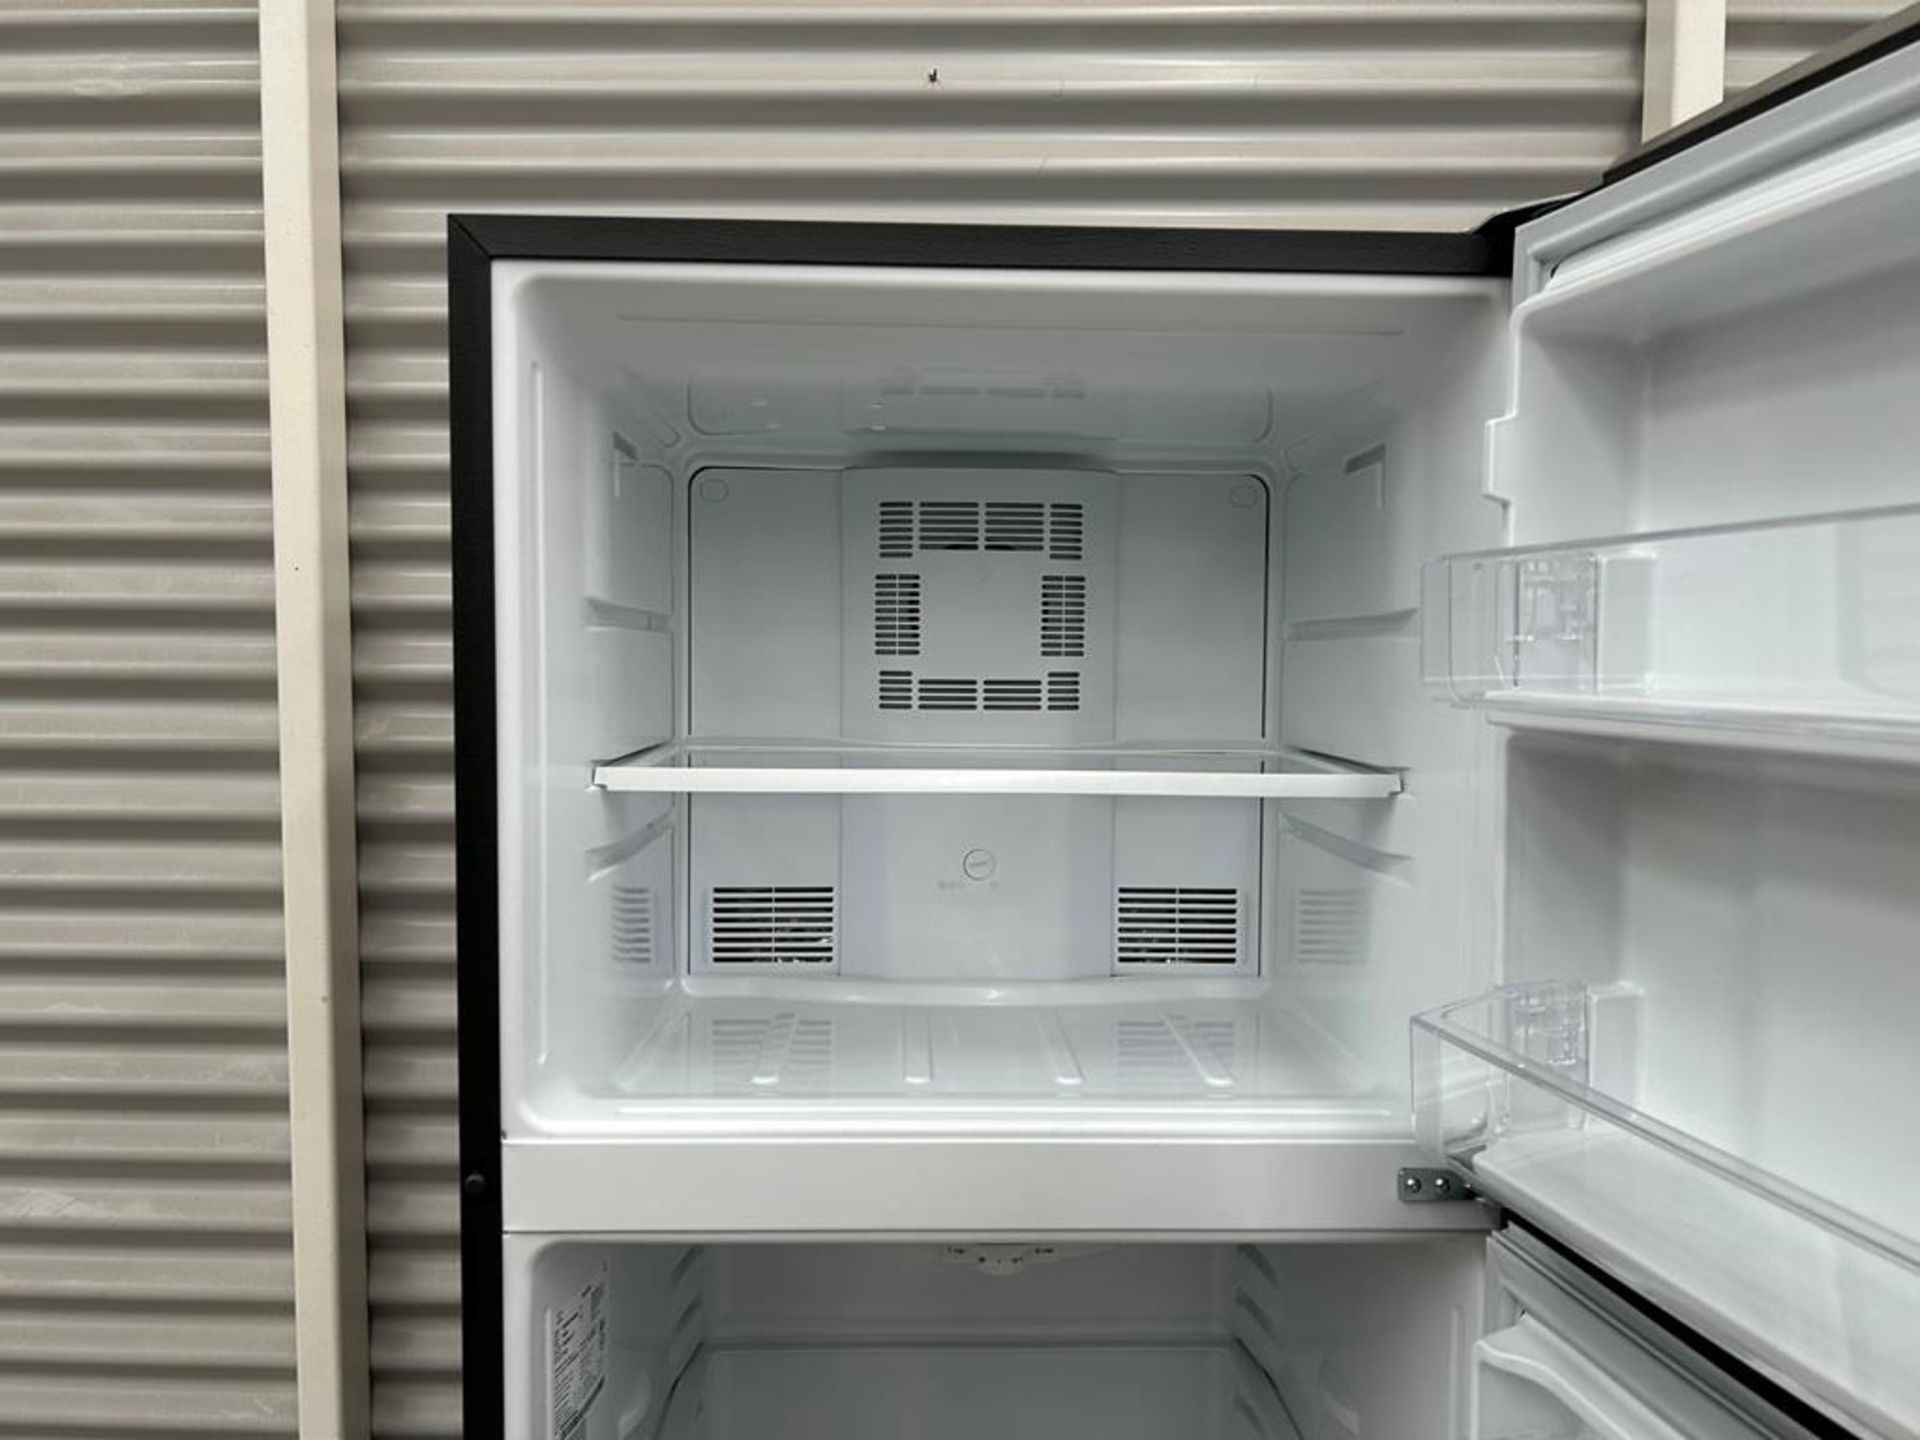 Lote de 2 refrigeradores contiene: 1 Refrigerador Marca MABE, Modelo RME360PVMRM0, Serie 01177, Col - Image 5 of 18